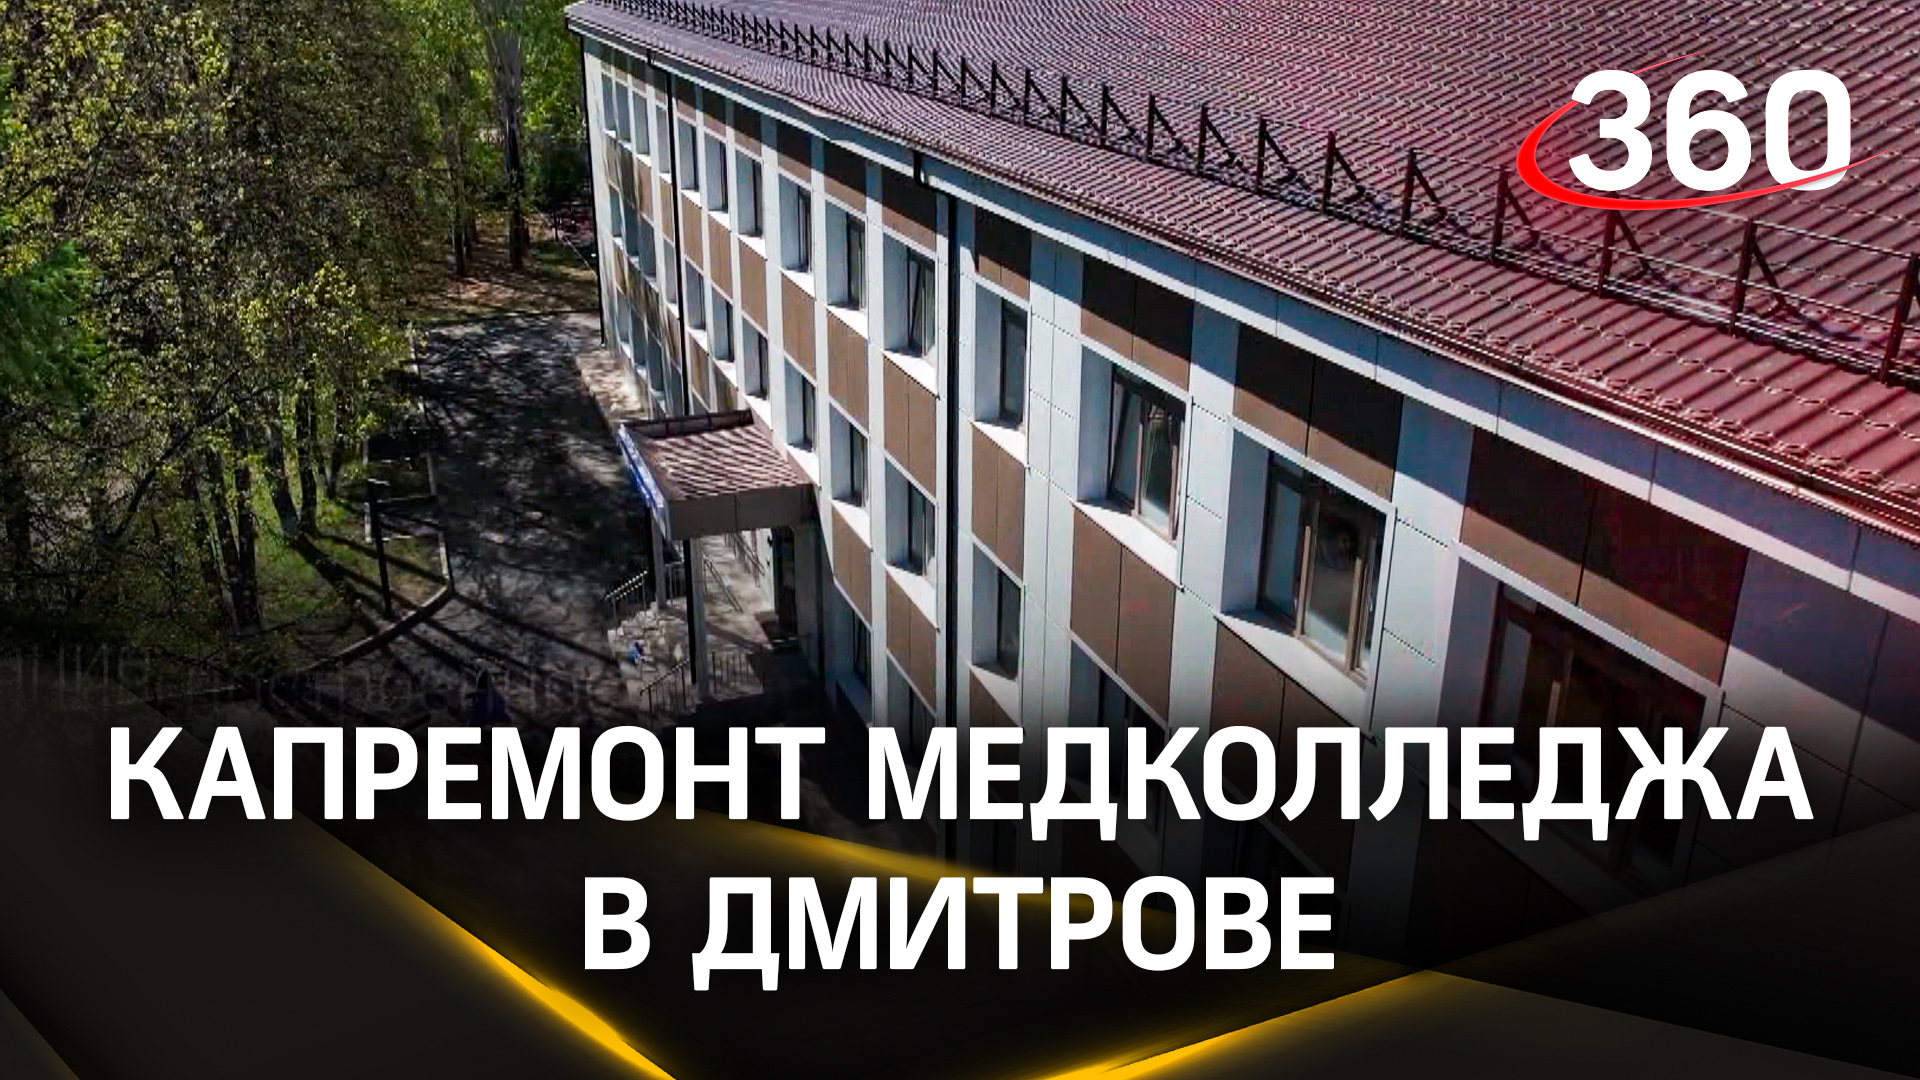 Как изменился Дмитровский медицинский колледж №1 после капитального ремонта